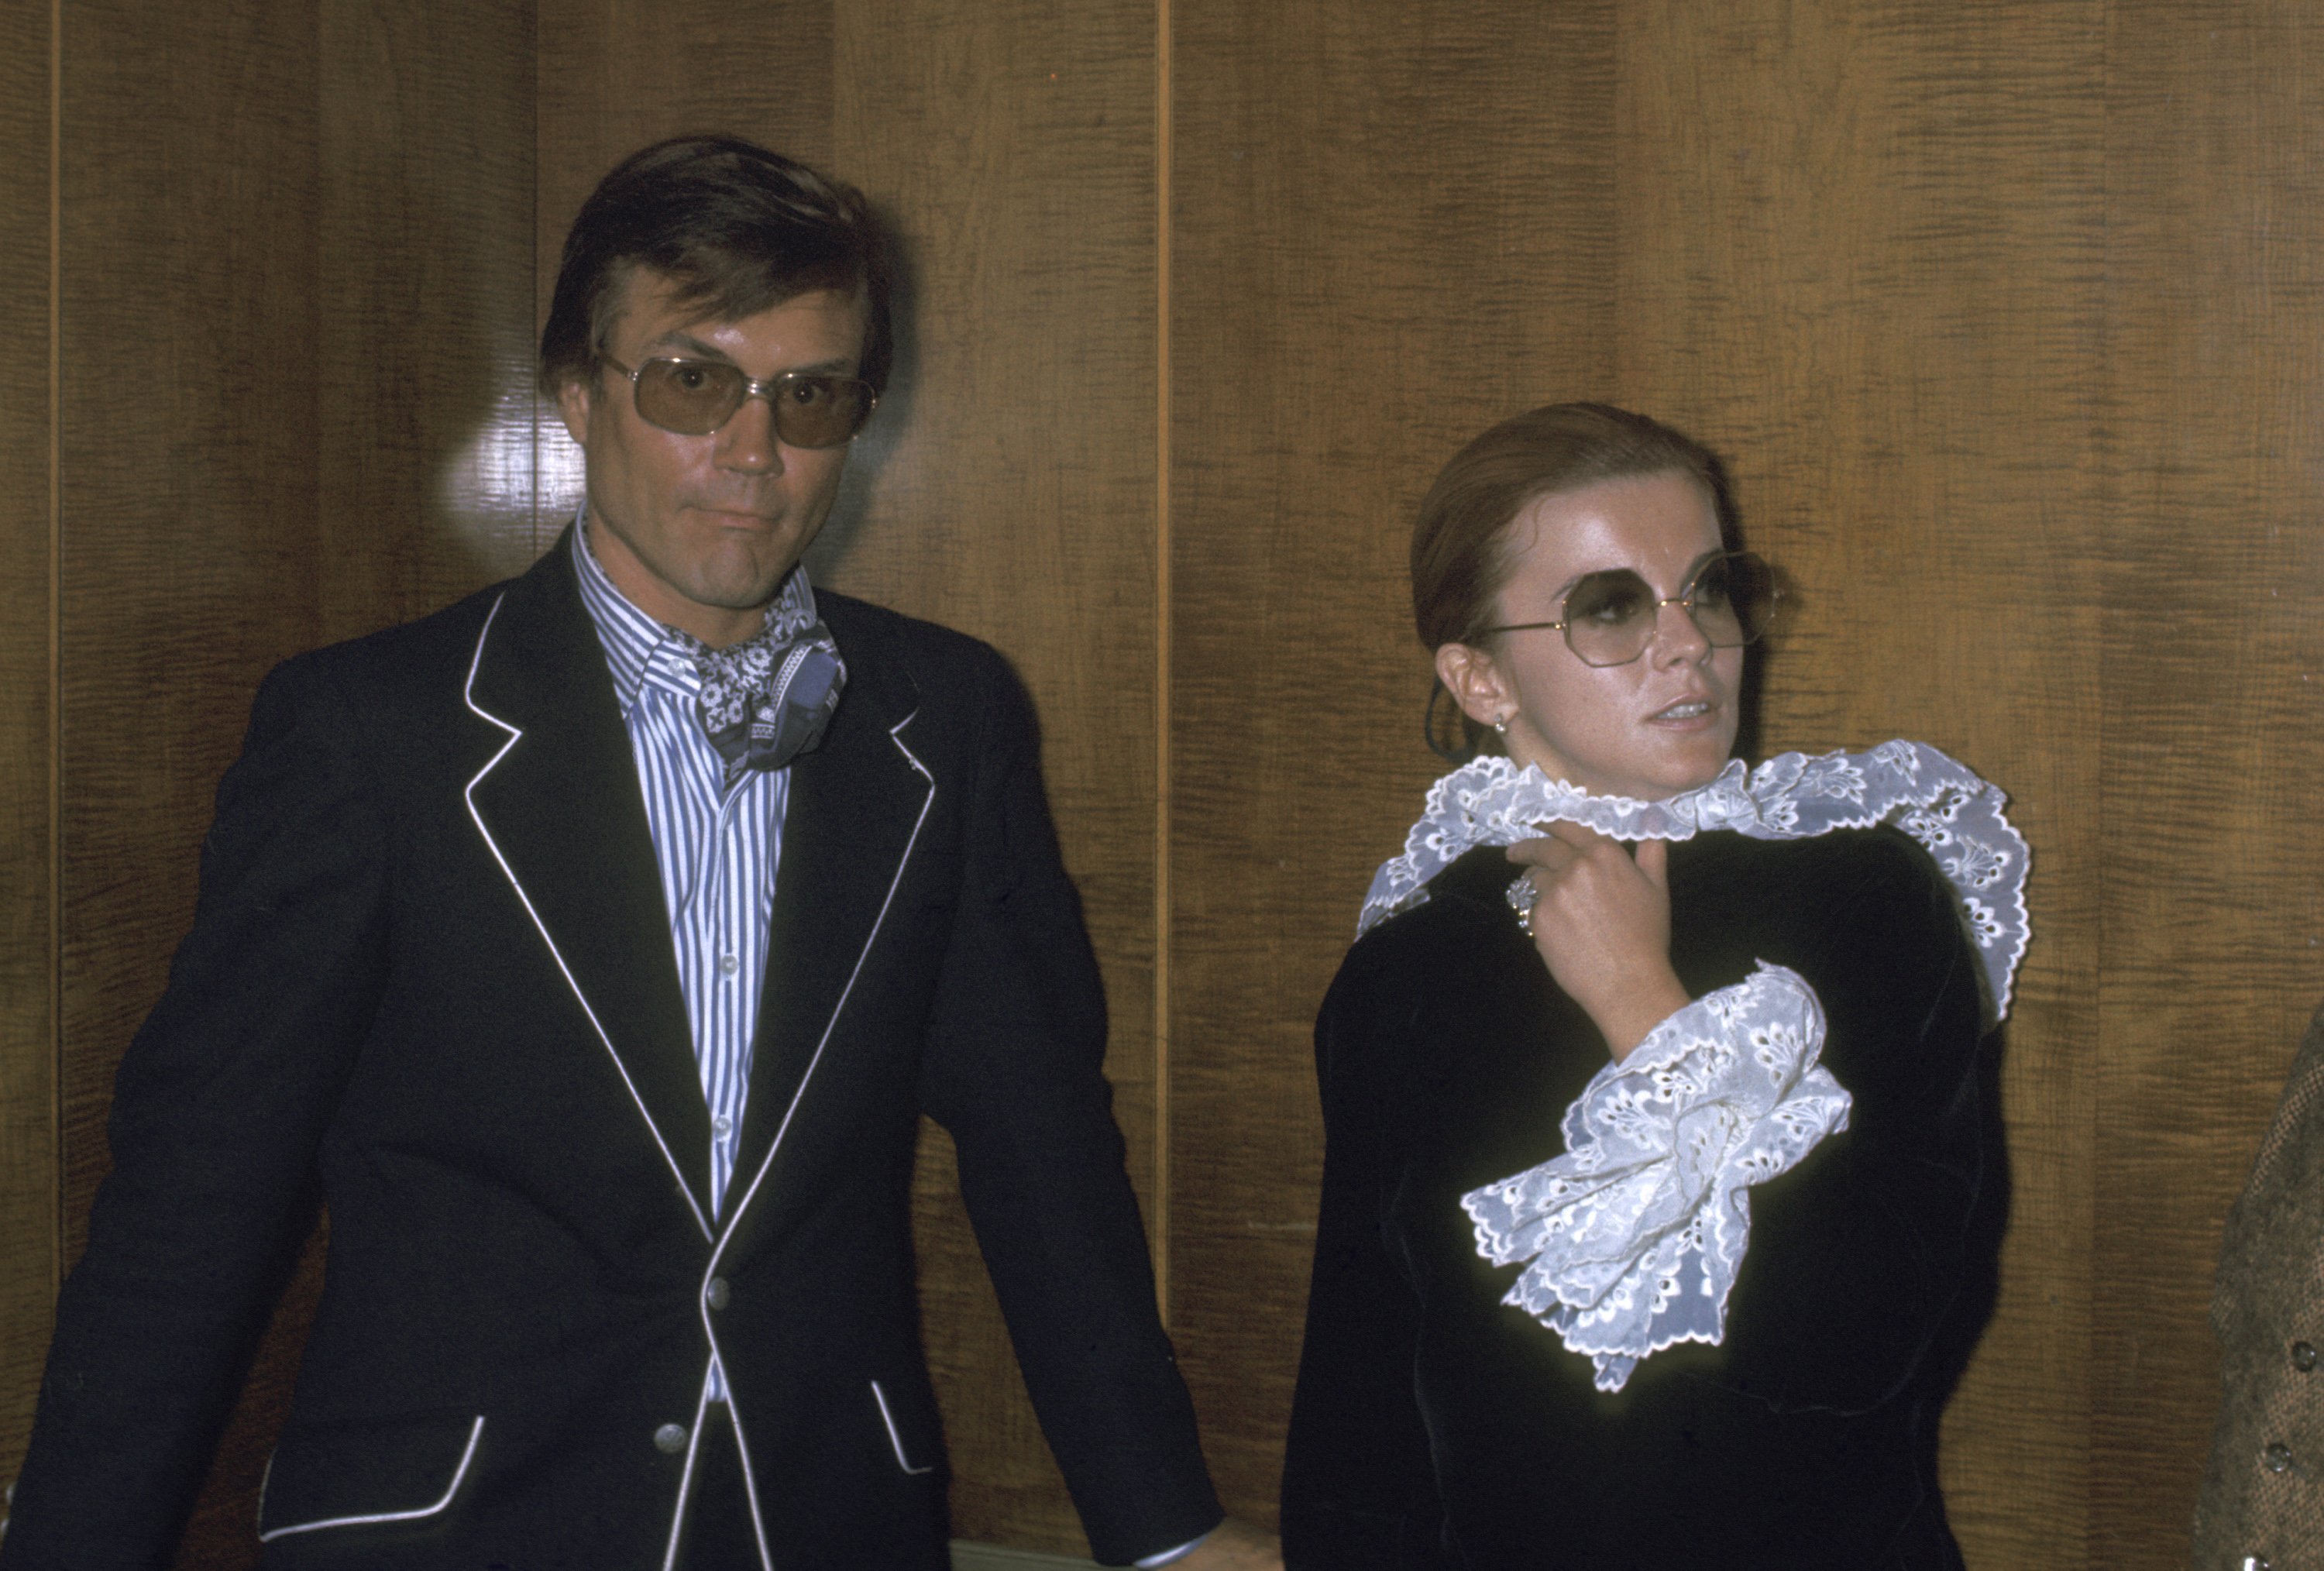 Ann-Margret und ihr fünfzigjähriger Ehemann, Roger Smith, bei ihrem Besuch in New York City, New York. | Quelle: Getty Images